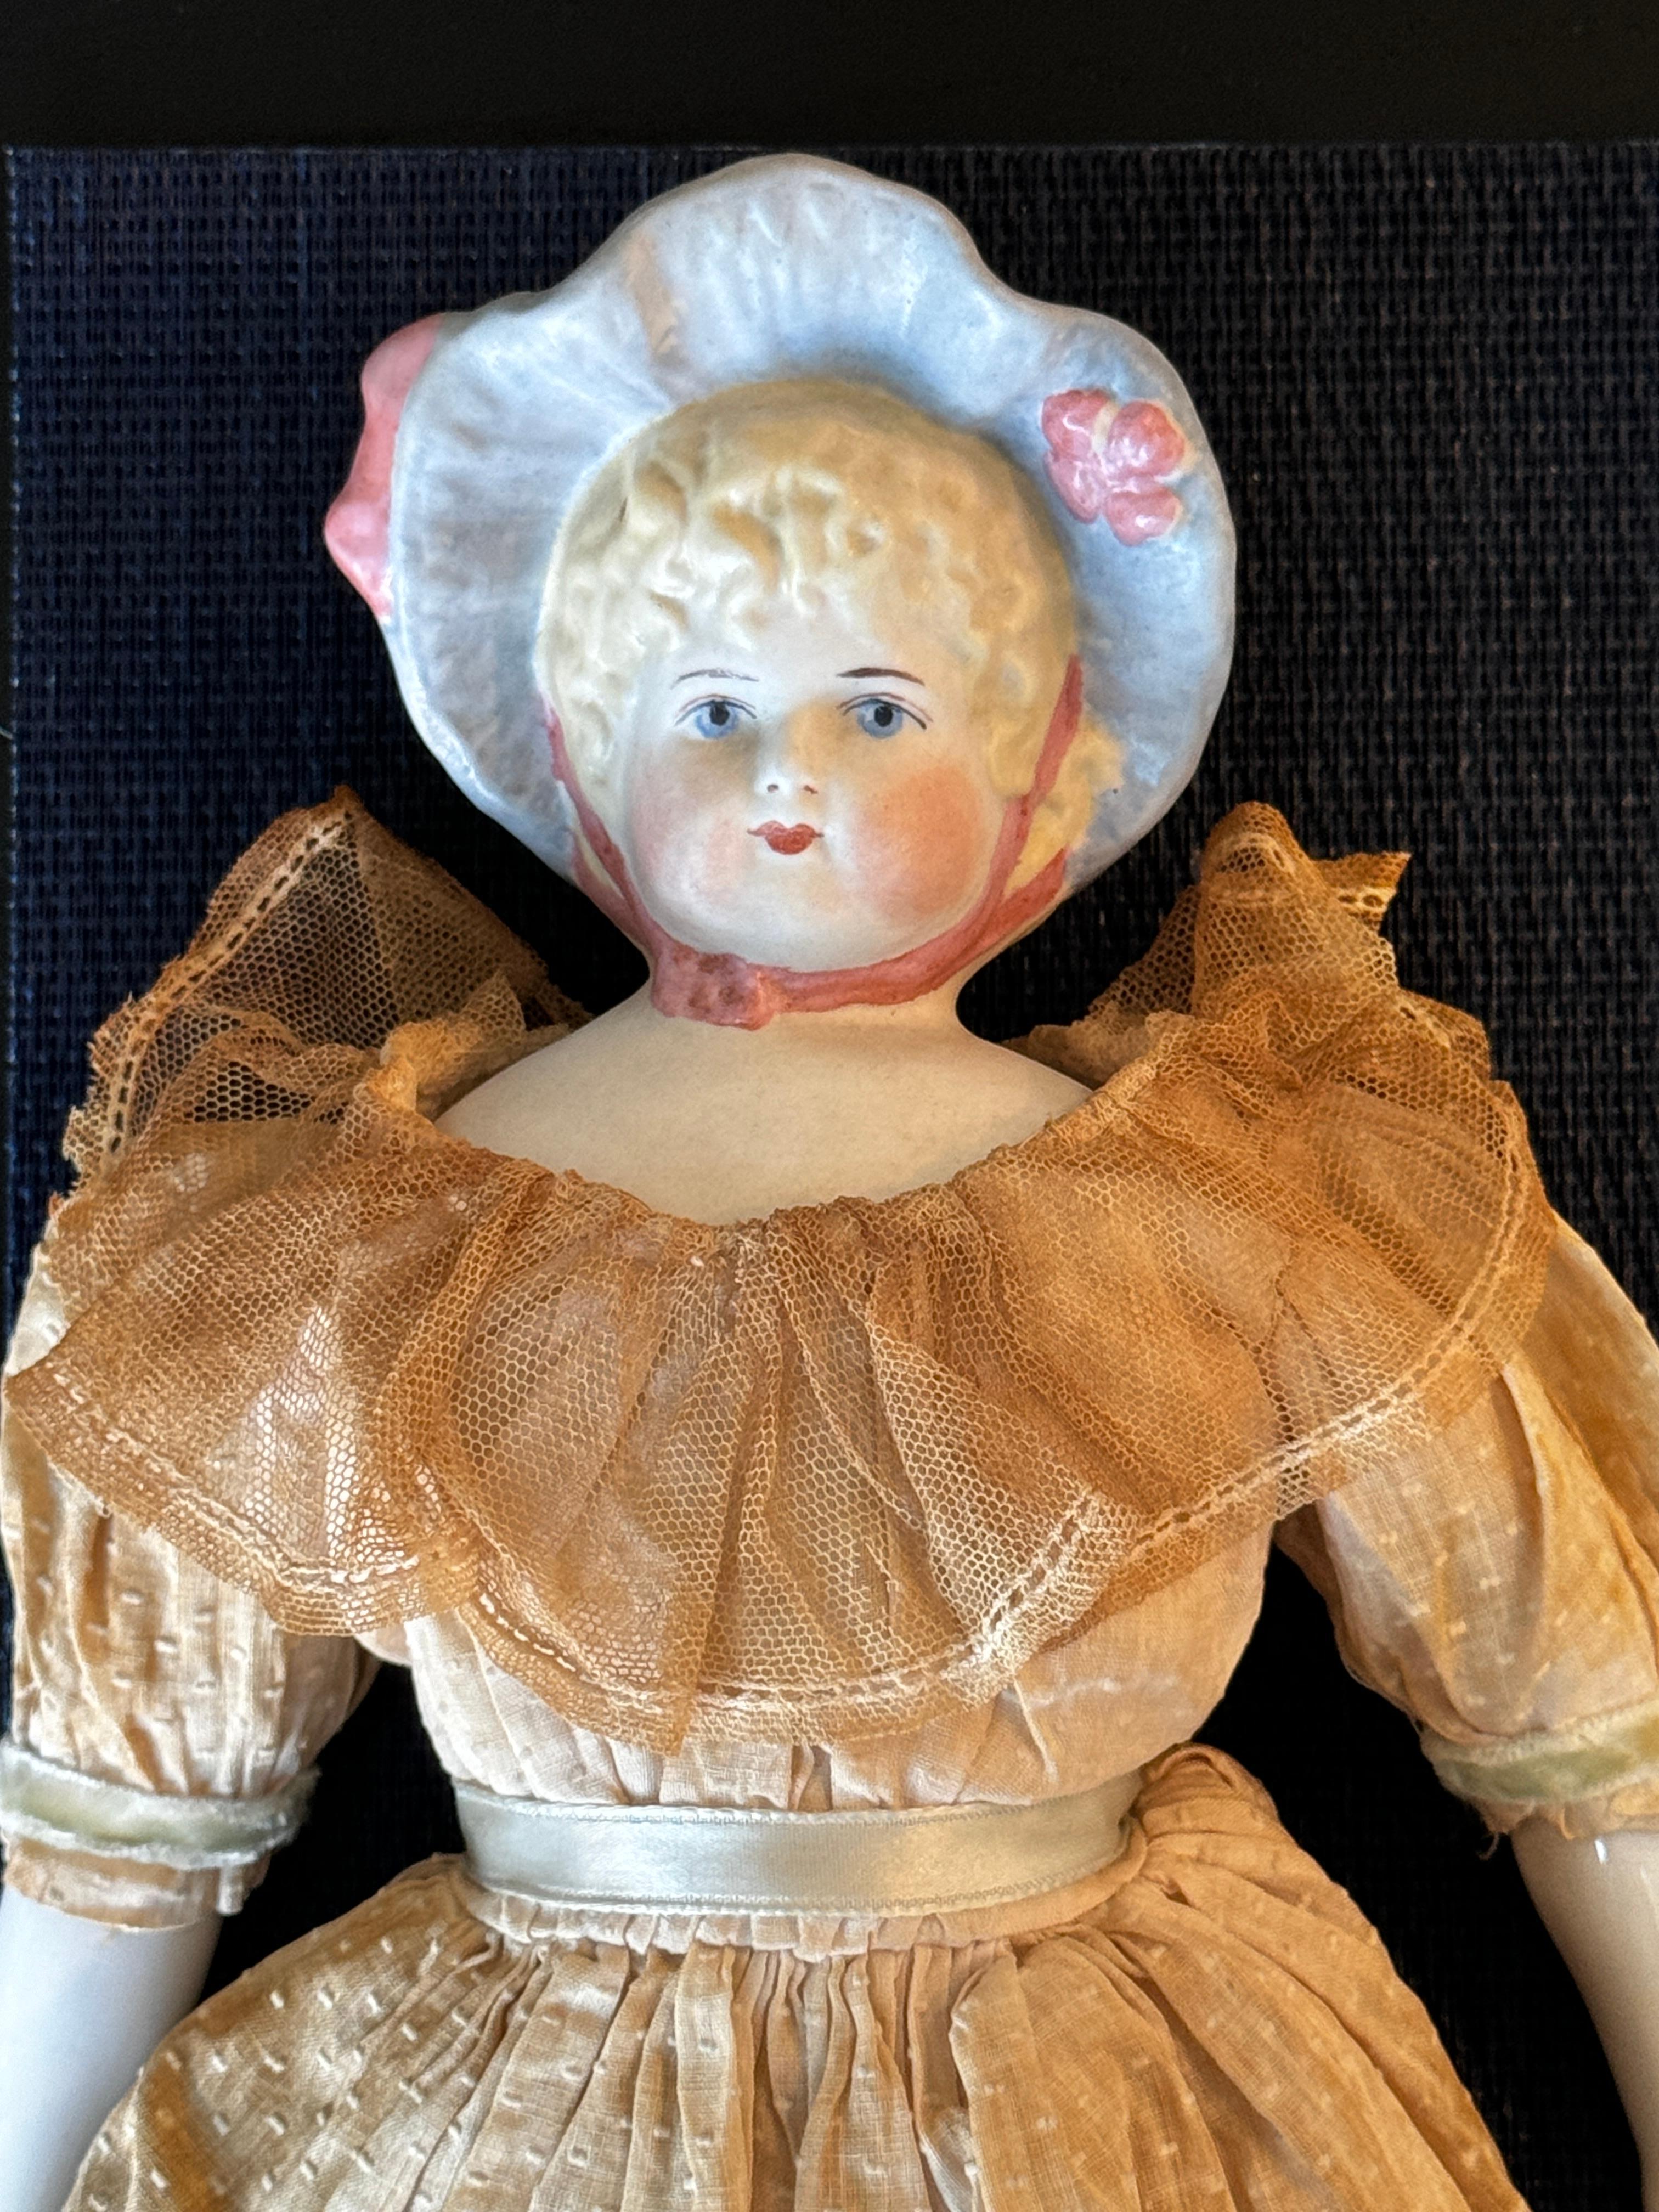 Deux poupées en biscuit et porcelaine du 19ème siècle

Un exemplaire signé Lathrop à l'arrière des épaules

5,5 